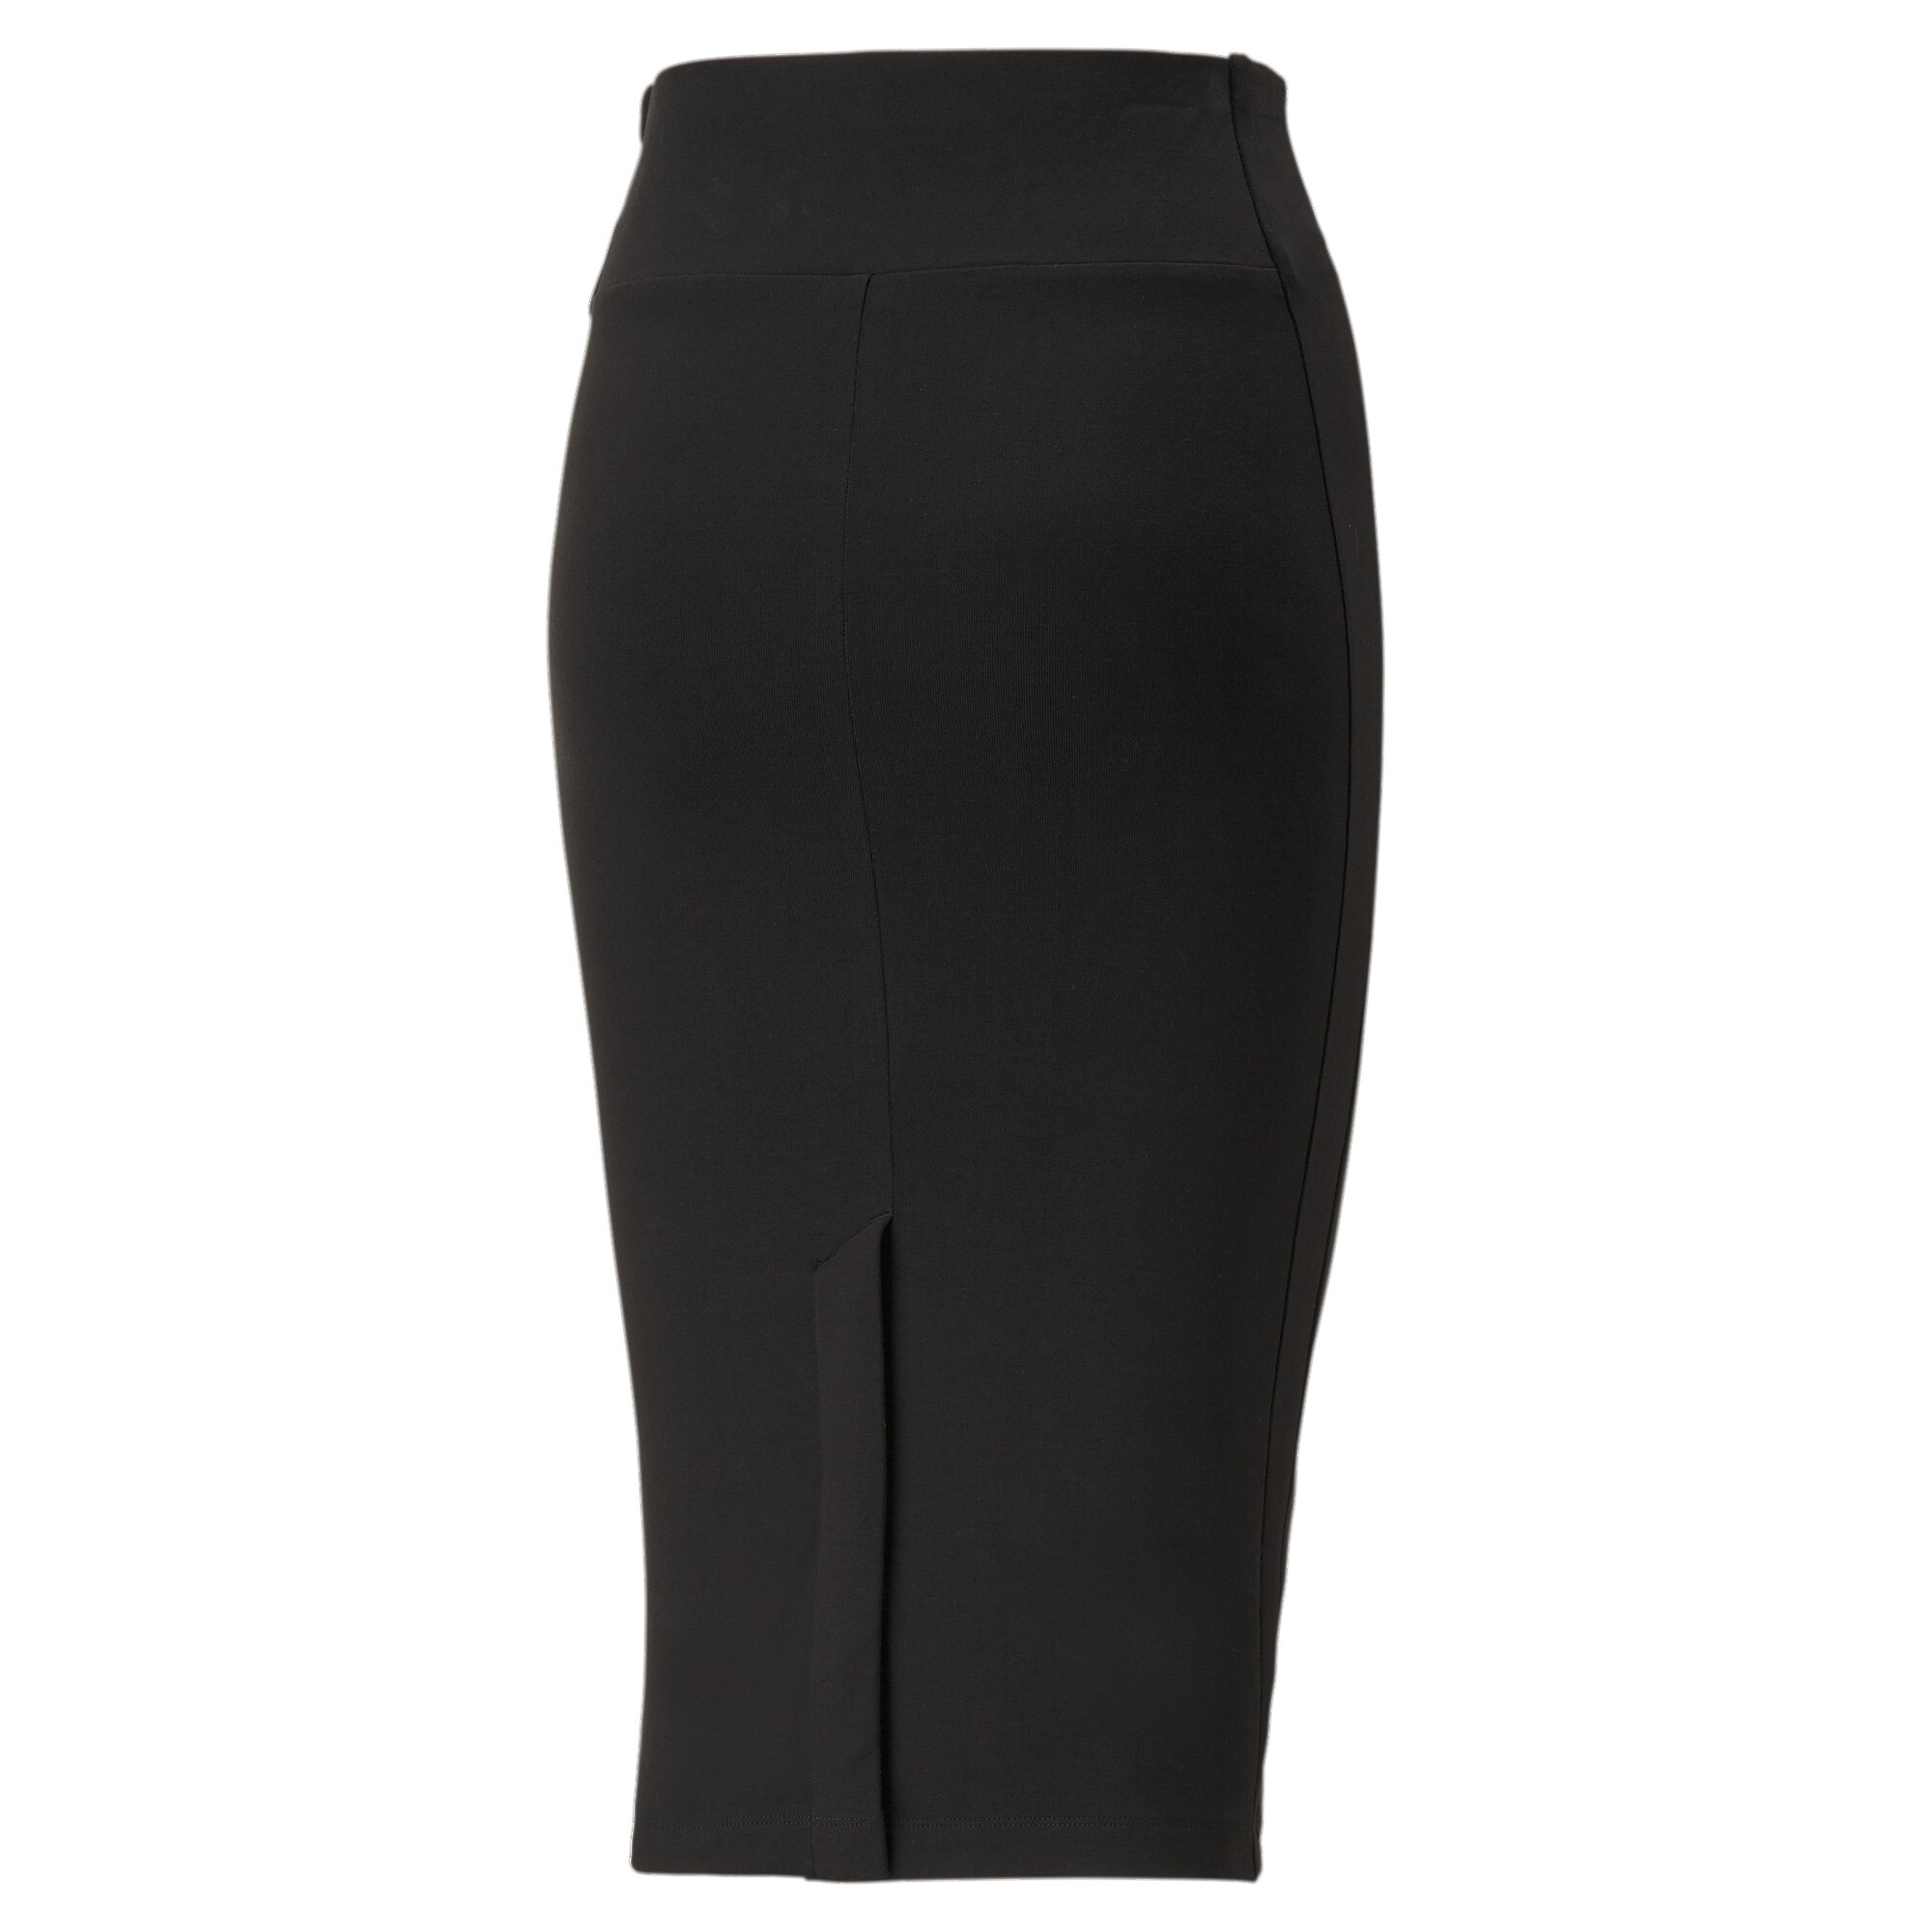 Women's PUMA T7 Long Skirt Women In Black, Size Small